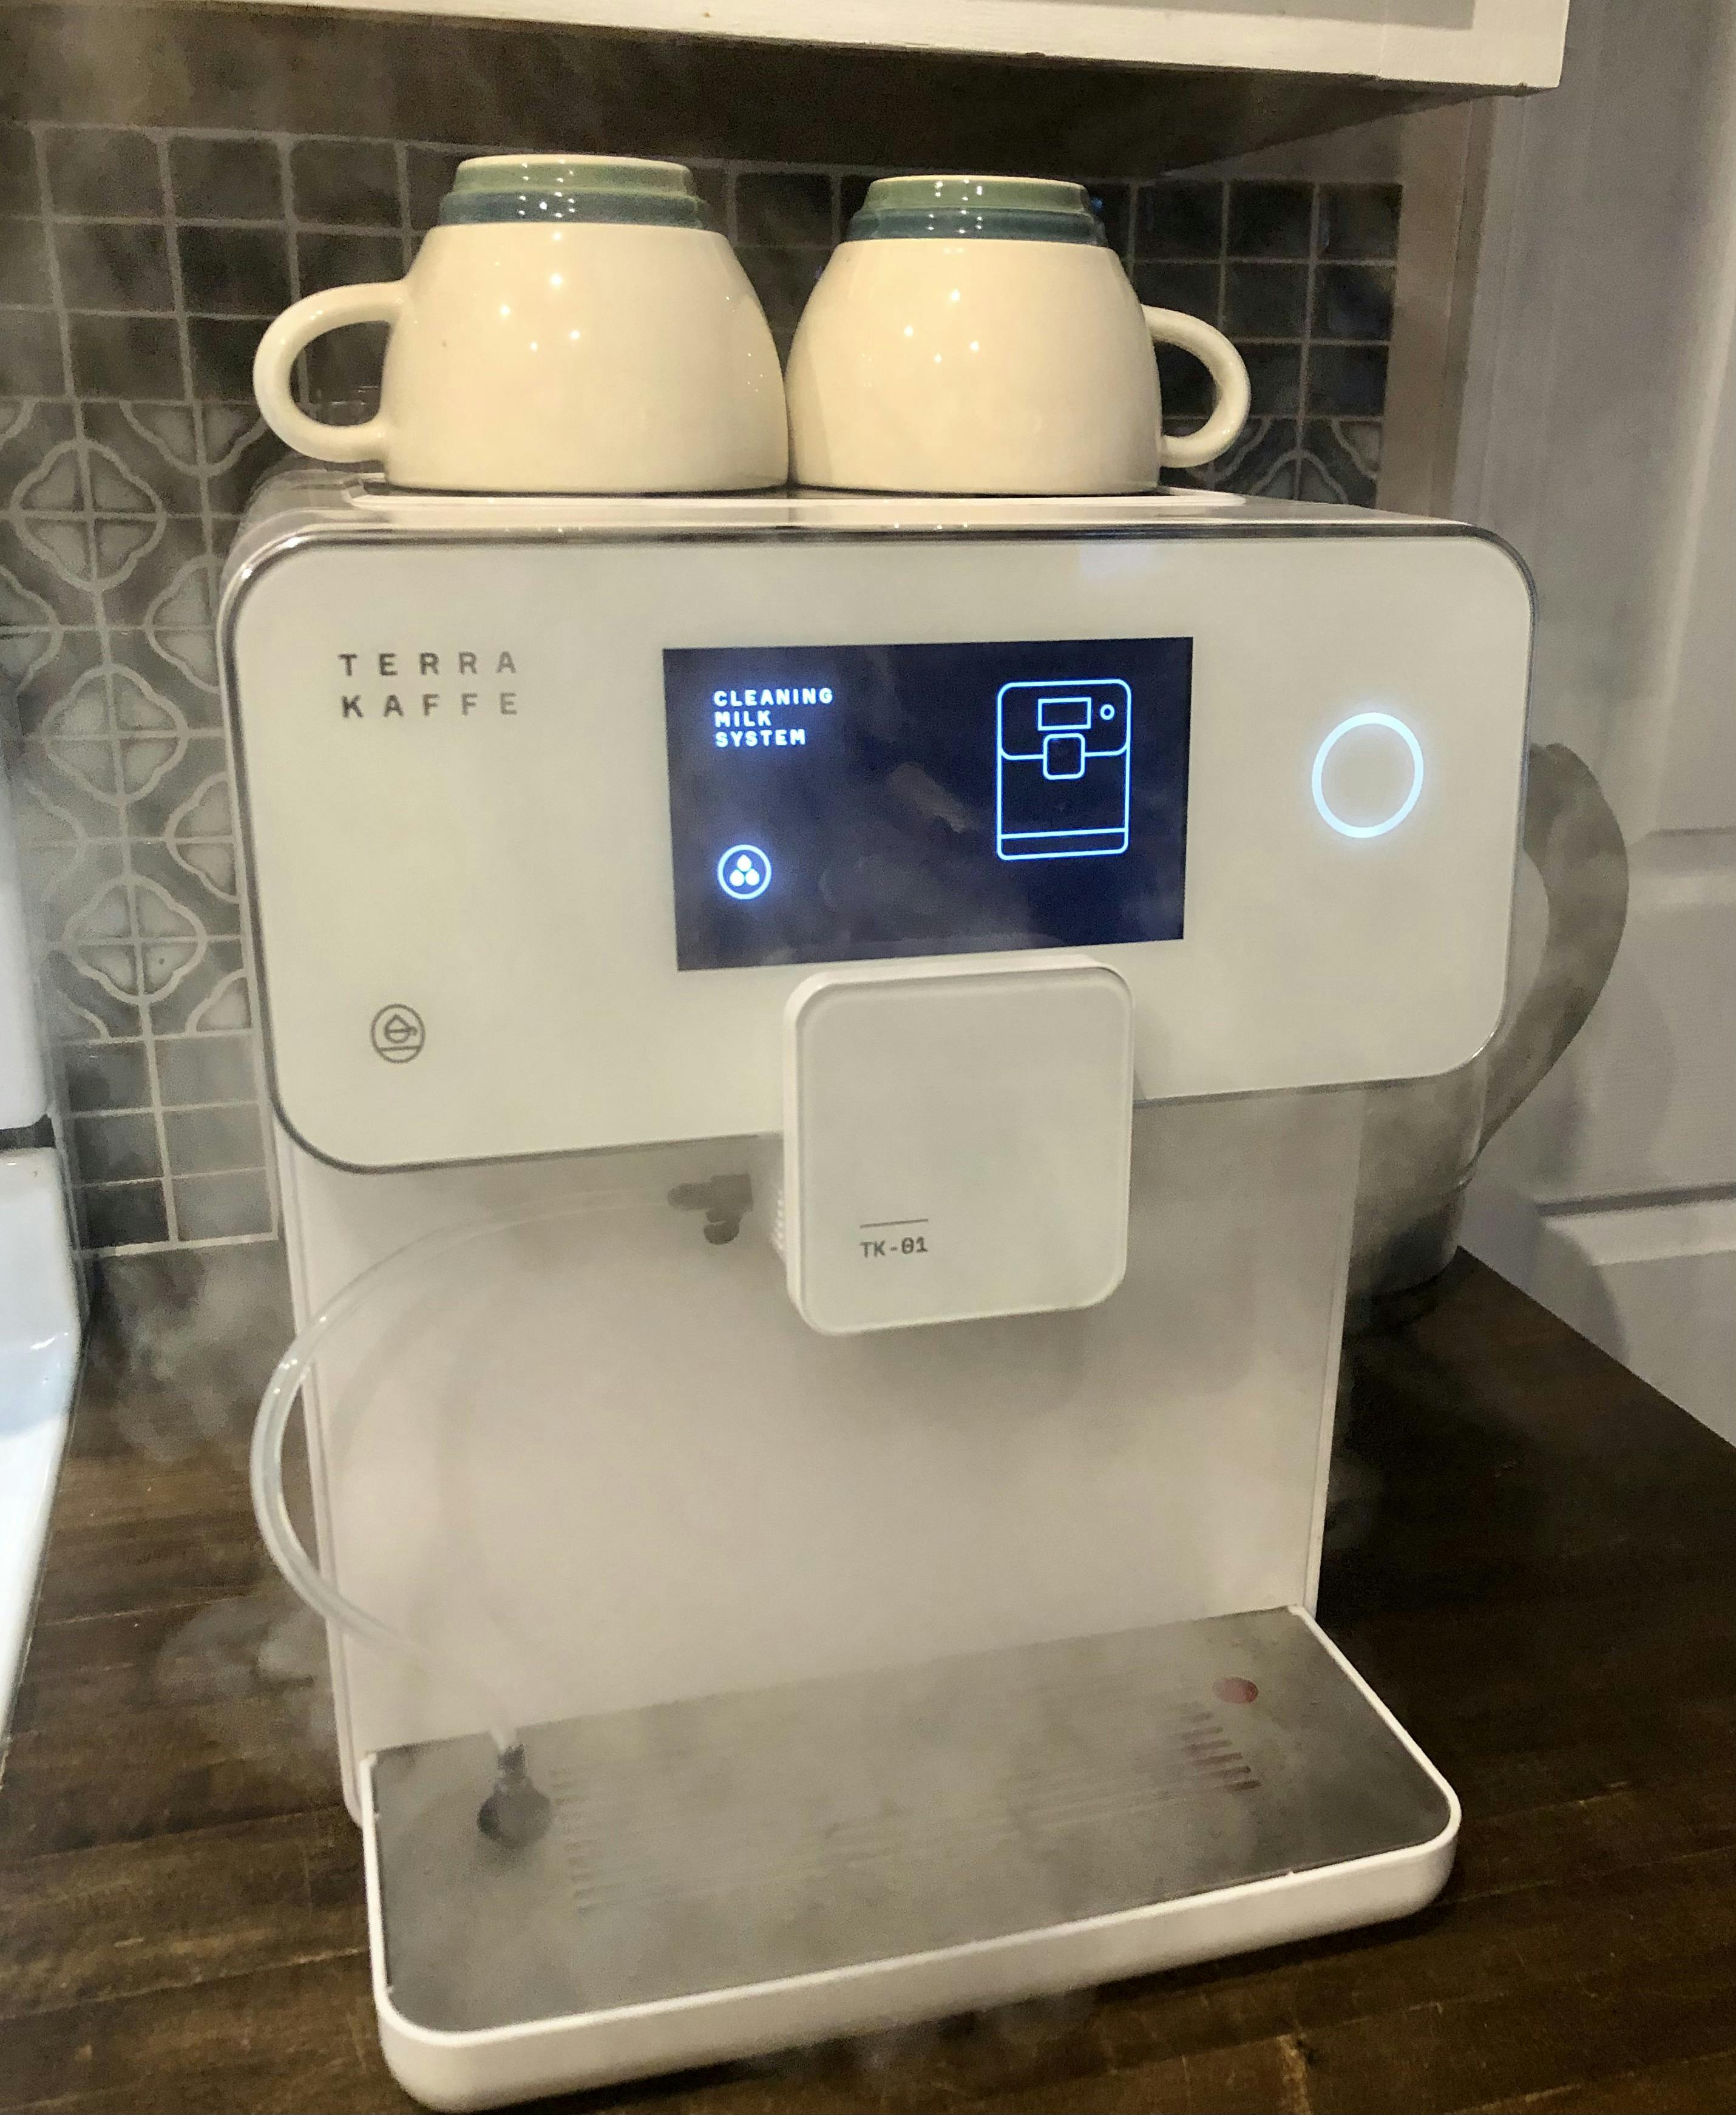 The Terra Kaffe TK-01 Espresso Machine cleaning its milk system.